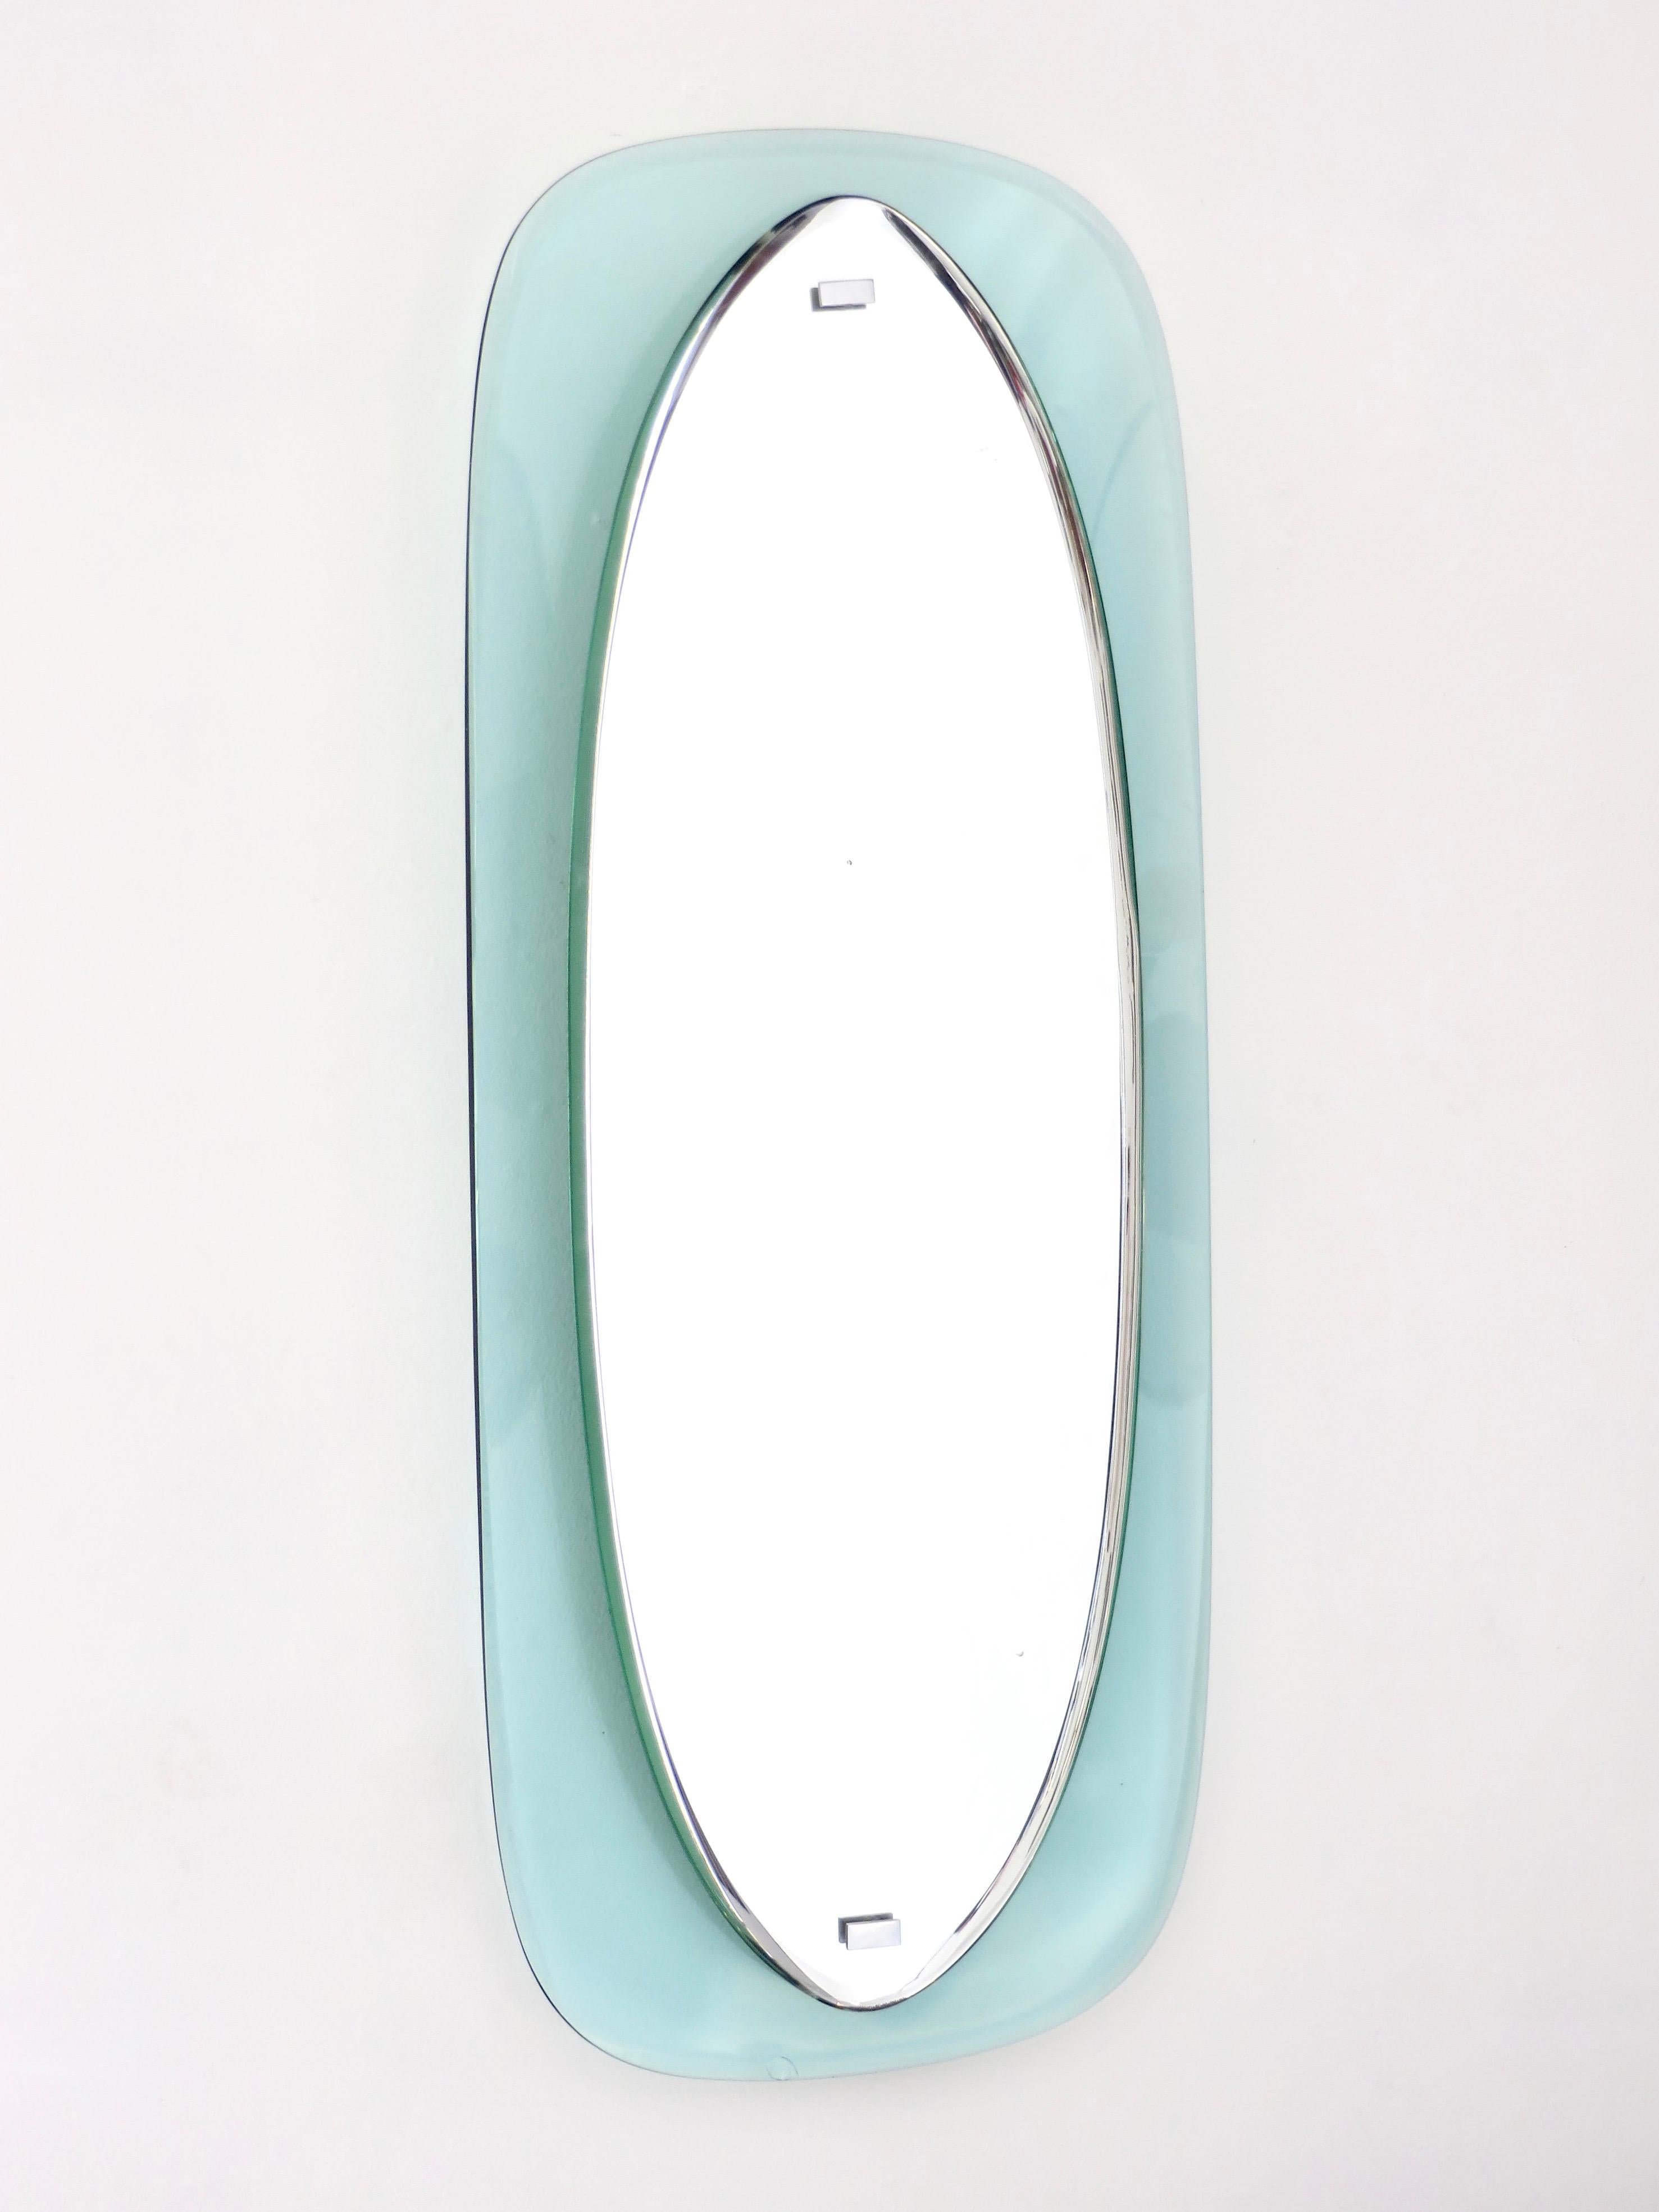 Miroir ovale italien encadré de bleu pâle et de cristal flottant biseauté avec verre original par crystal Arte Circa 1960. 
Lors de l'expédition de ce miroir, il s'est produit un petit éclat ou fragment conchoïdal à l'intérieur du verre, au bas du